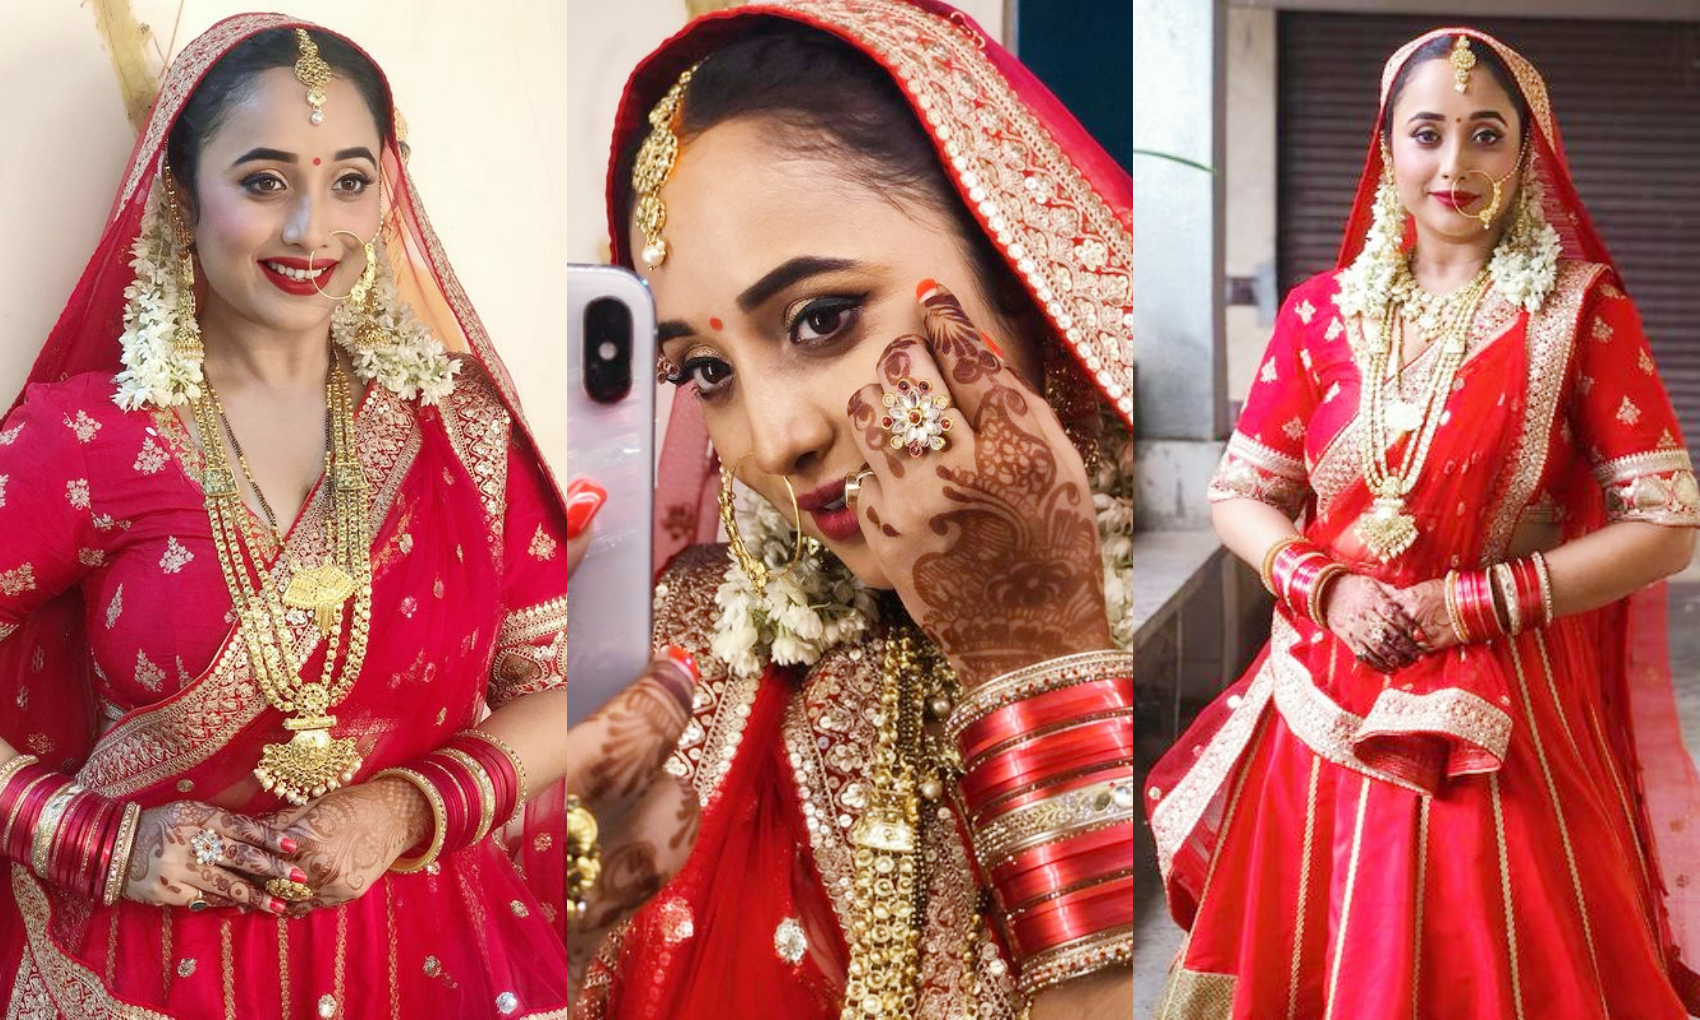 Rani chatterjee: दुल्हन की तरह सजी रानी चटर्जी, मांग में सिंदूर देख यूजर्स ने पूछे शादी के सवाल